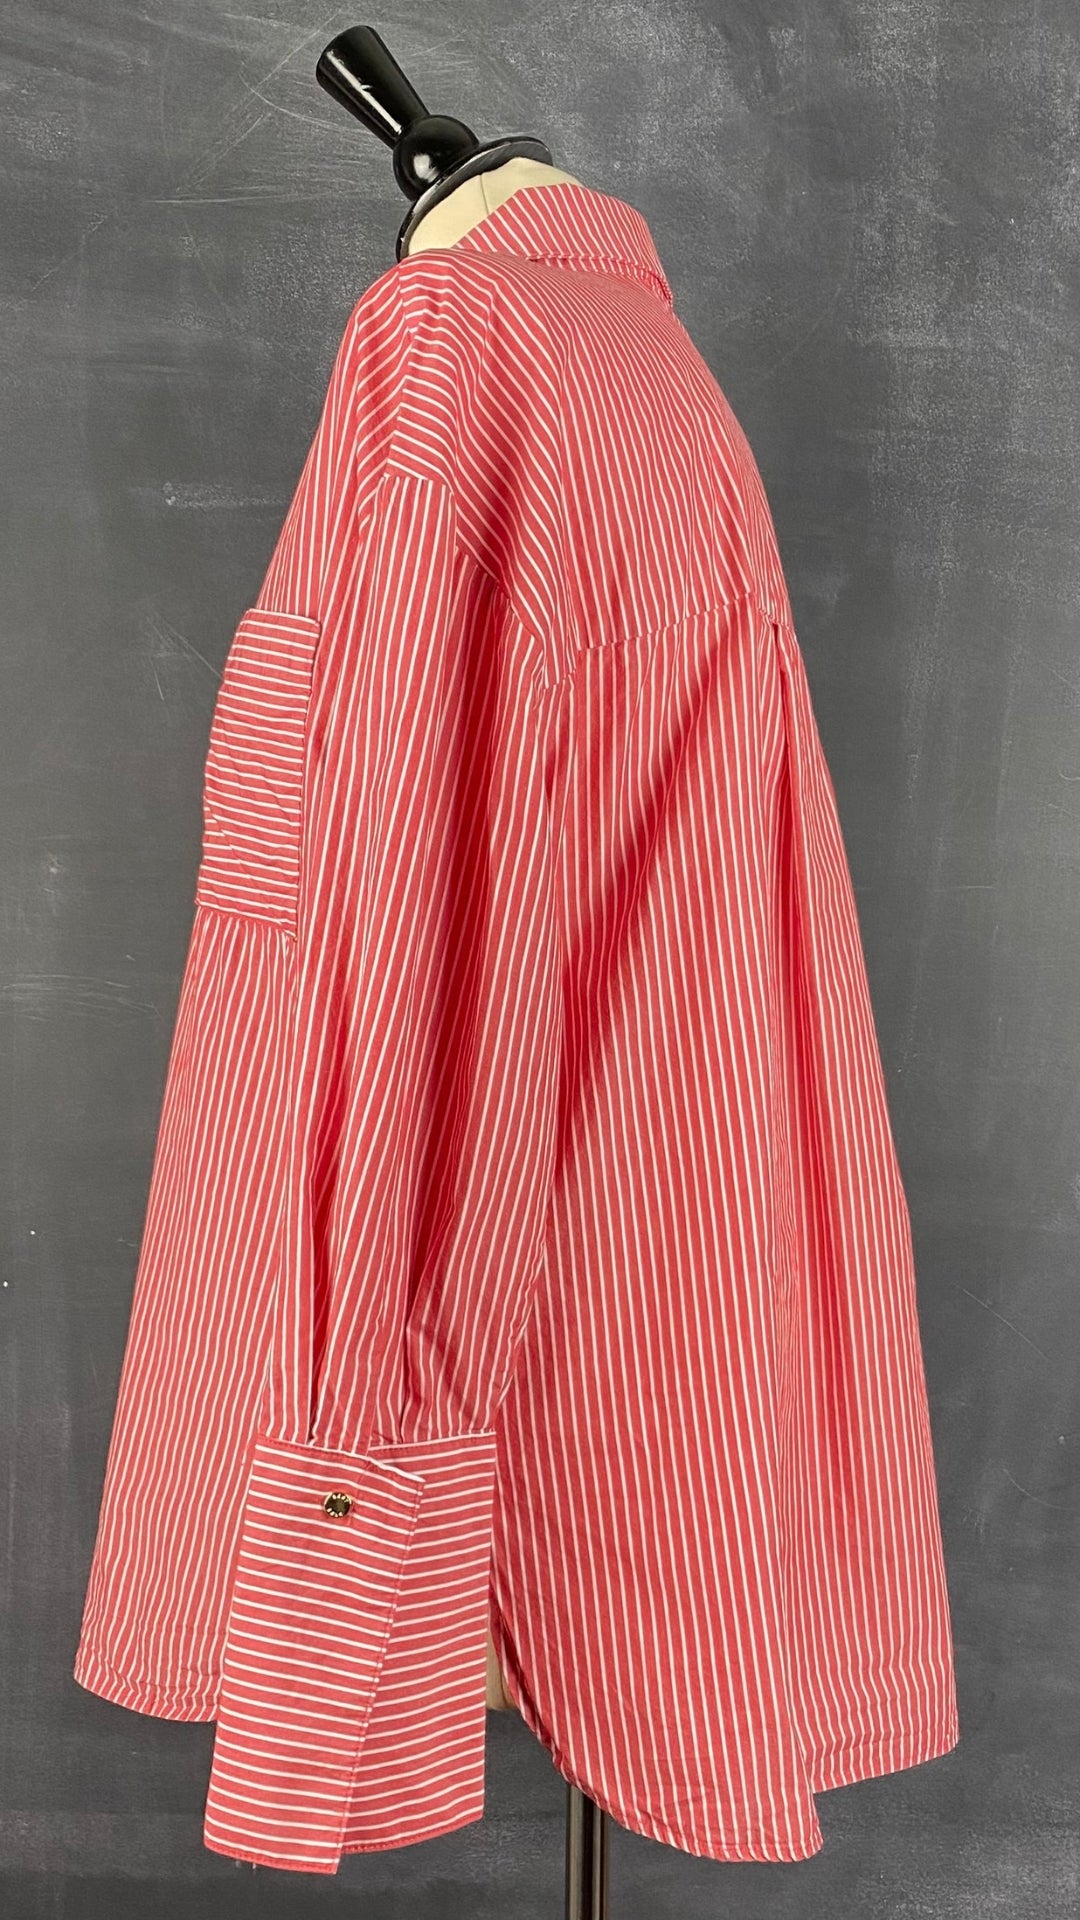 Chemisier rouge rose à rayures DKNY, taille medium. Vue de côté.